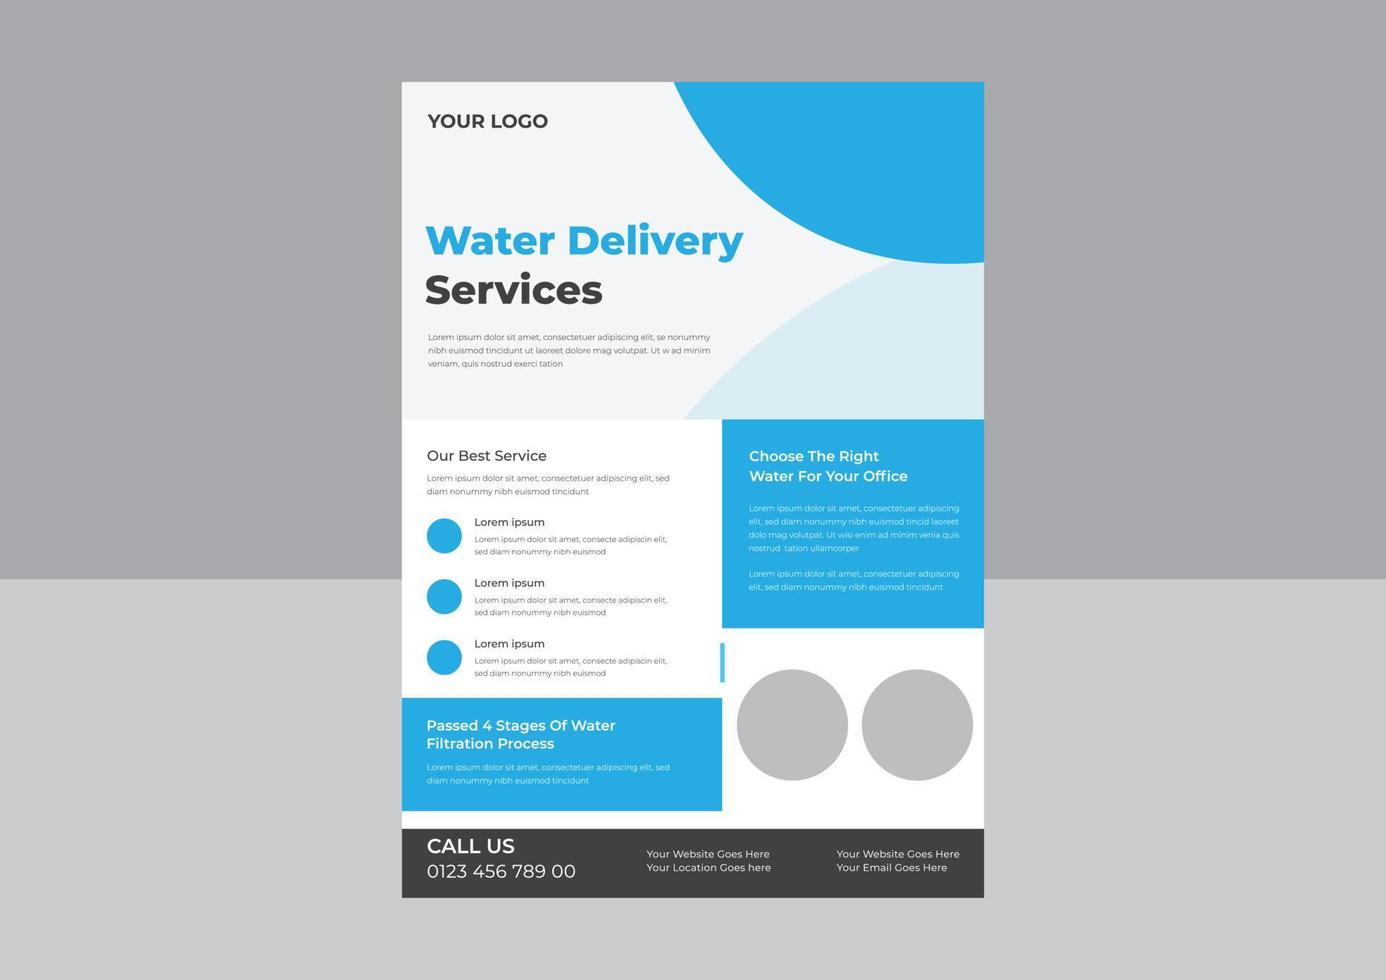 Flyer-Design für reines Wasser, Poster-Design für sauberes, sicheres Wasser, Flyer-Design für den Wassernachfüllservice. Plakatvorlage für reines Wasser trinken. vektor